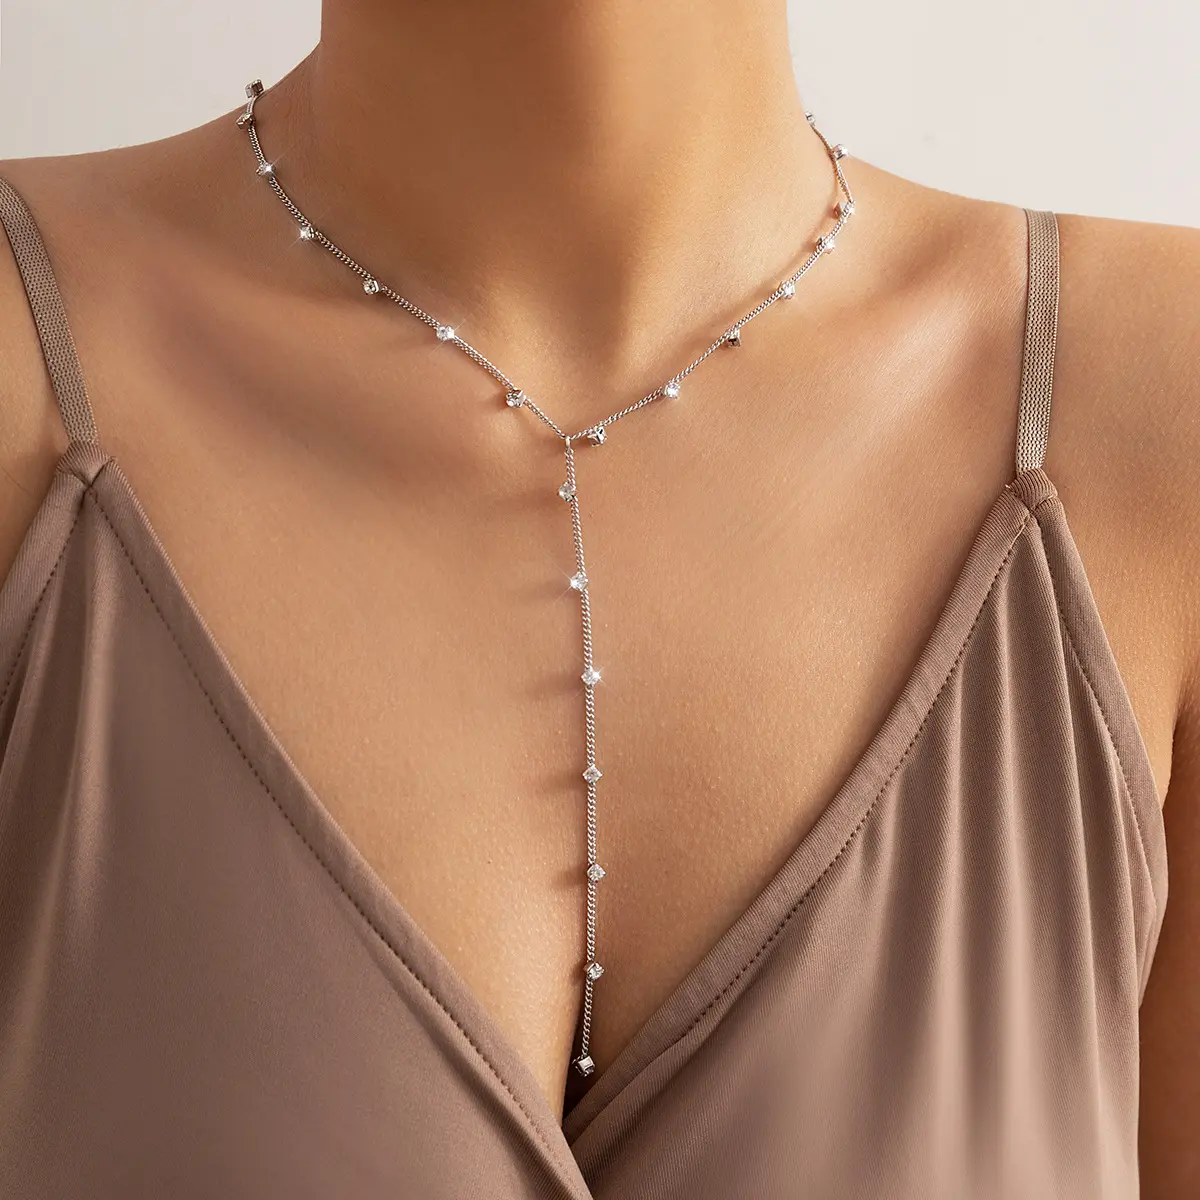 Leichte Luxus Sexy intellektuelle Senior Mode Strass lange Y-förmige Halskette süße coole Kette Quaste Frauen Halskette